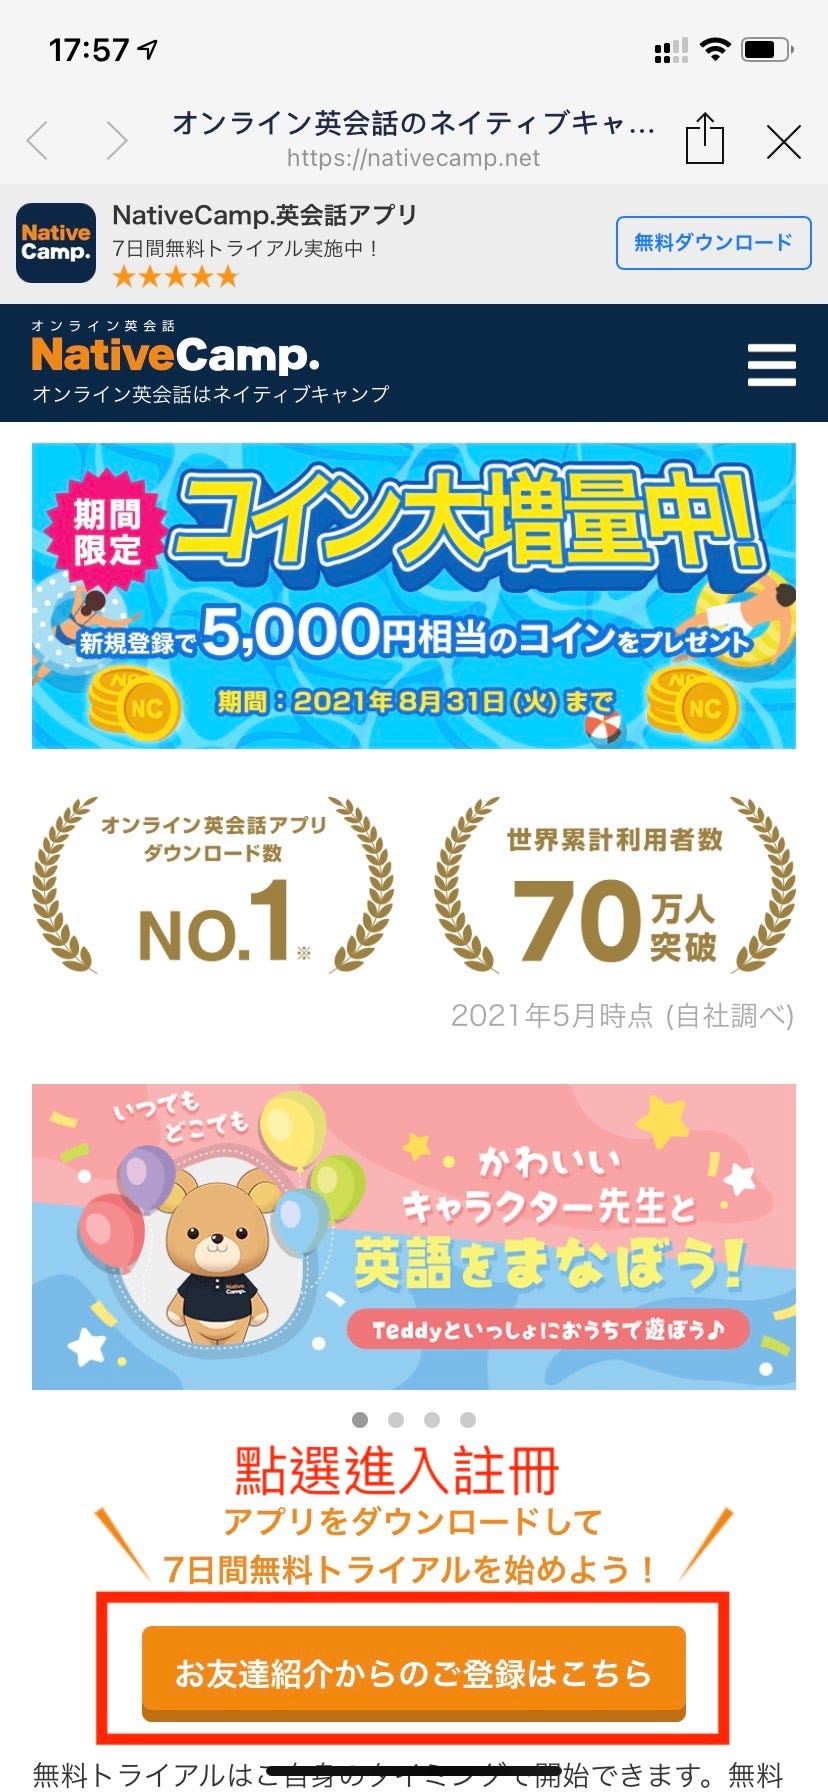 [資訊] NativeCamp 4月等值8000日圓優惠及FB社團